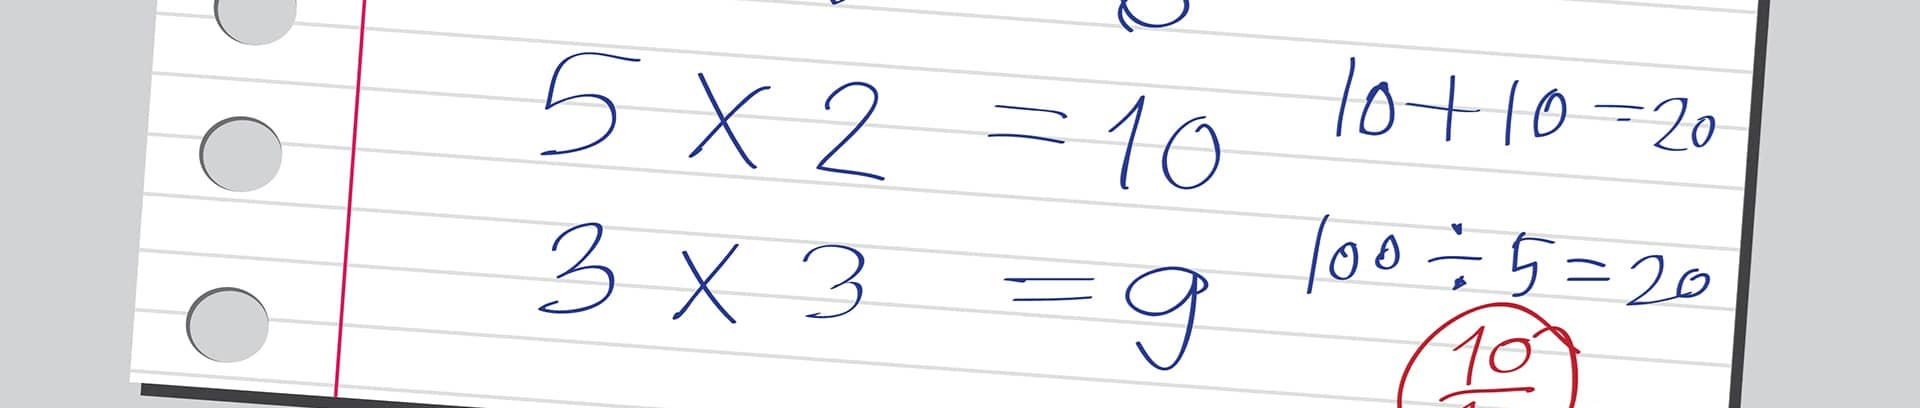 Billede af linieret papir med regnestykker